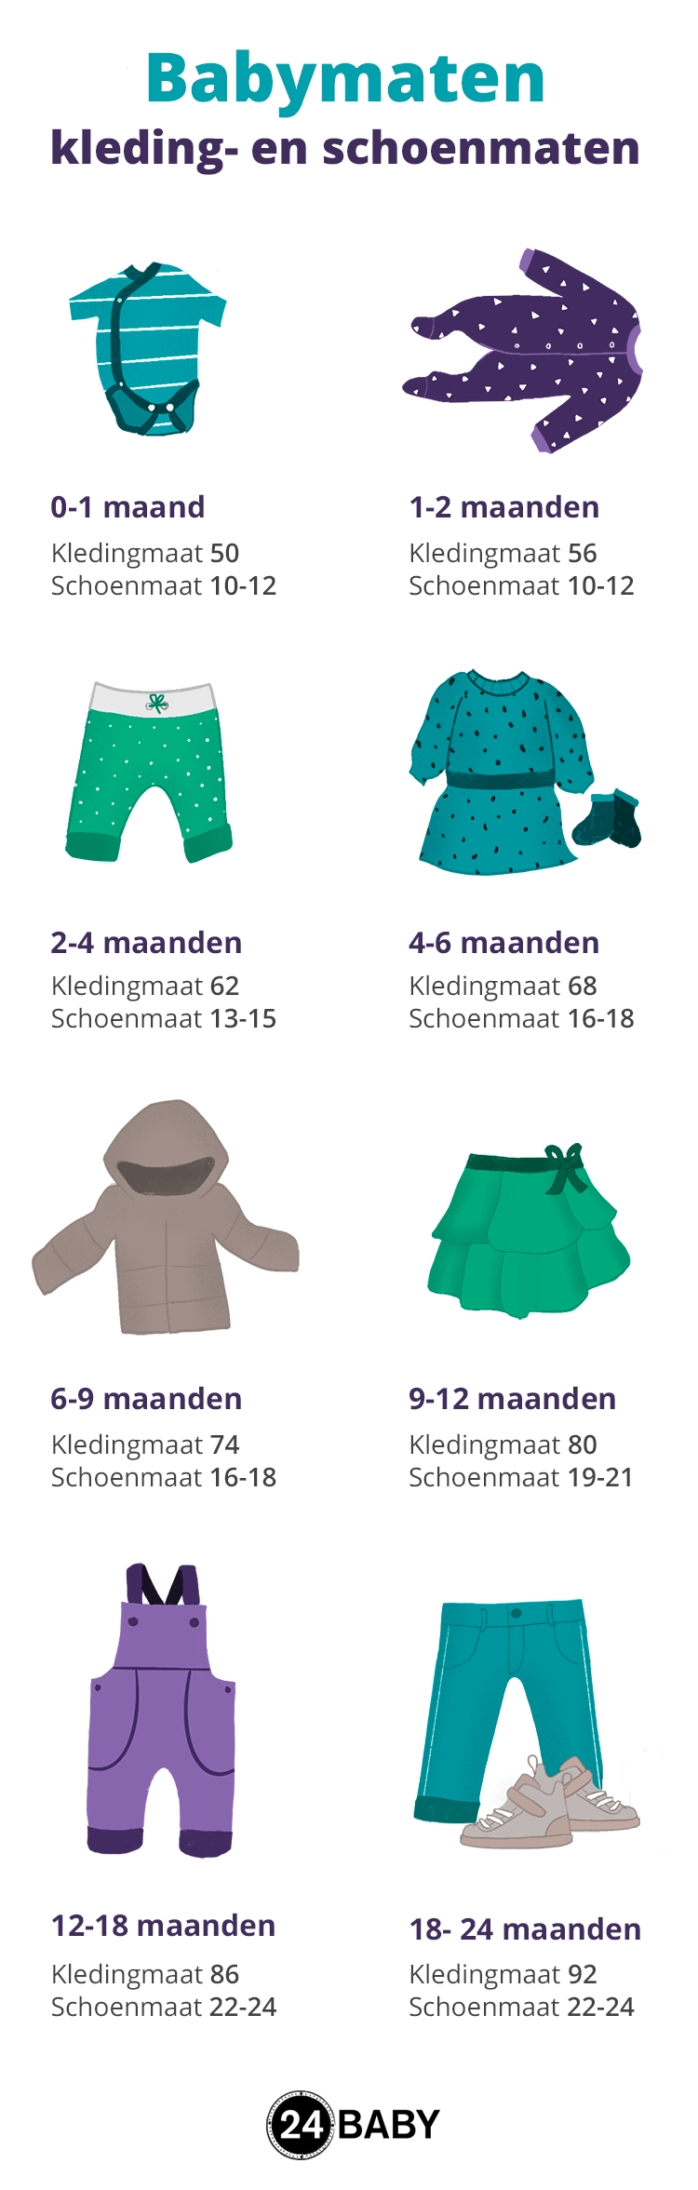 Bekend lepel Vegetatie Babymaten – van kledingmaat tot schoenmaat – 24Baby.nl